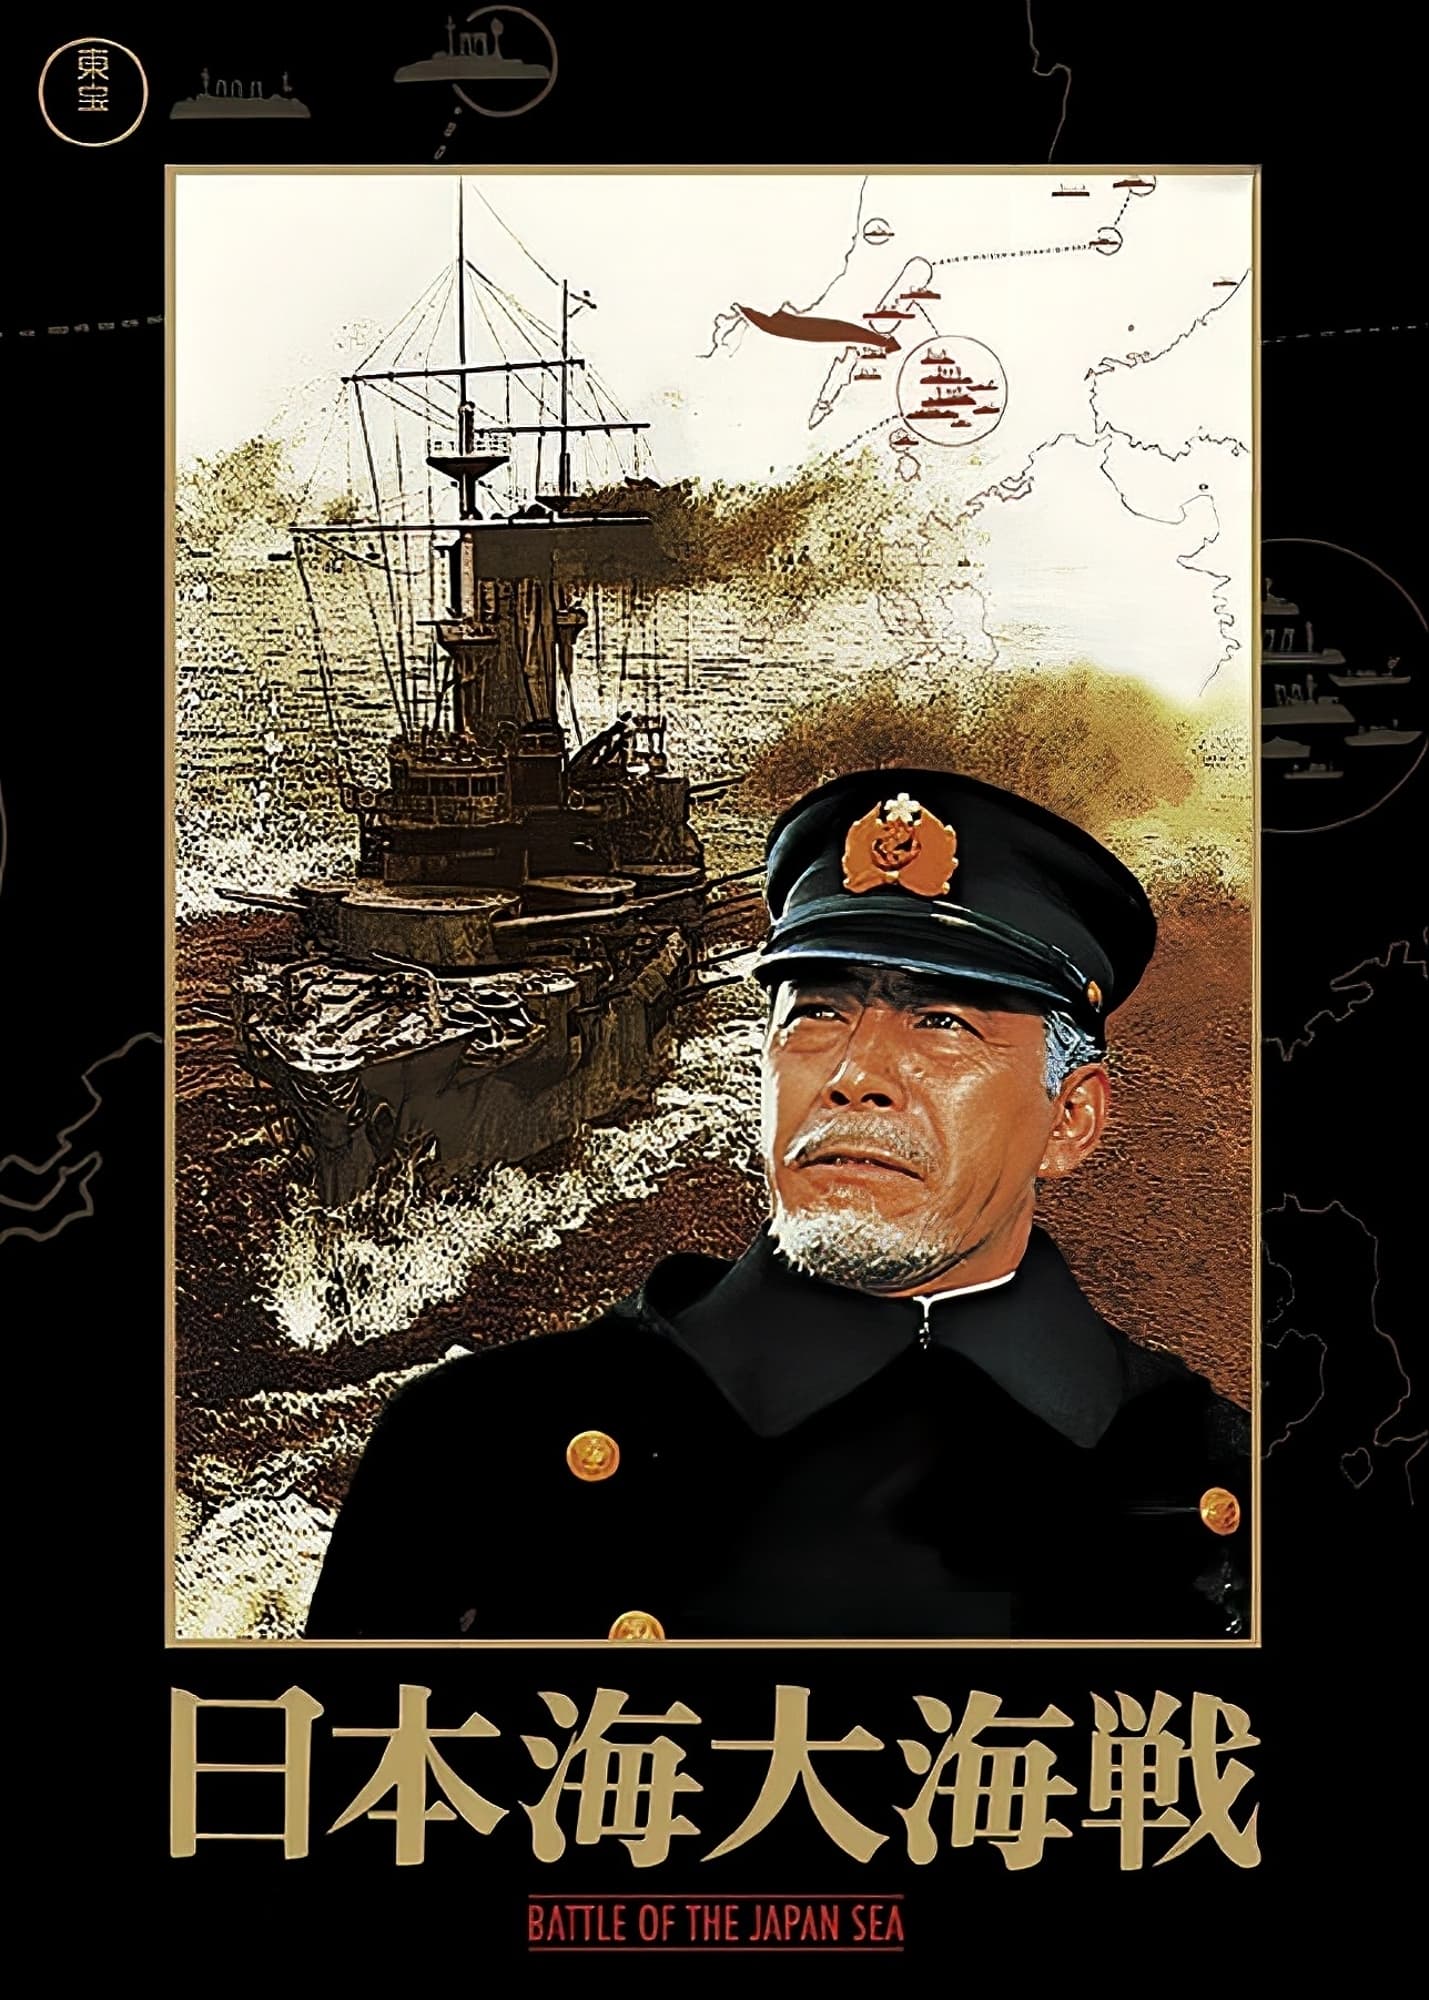 日本海大海戦の画像